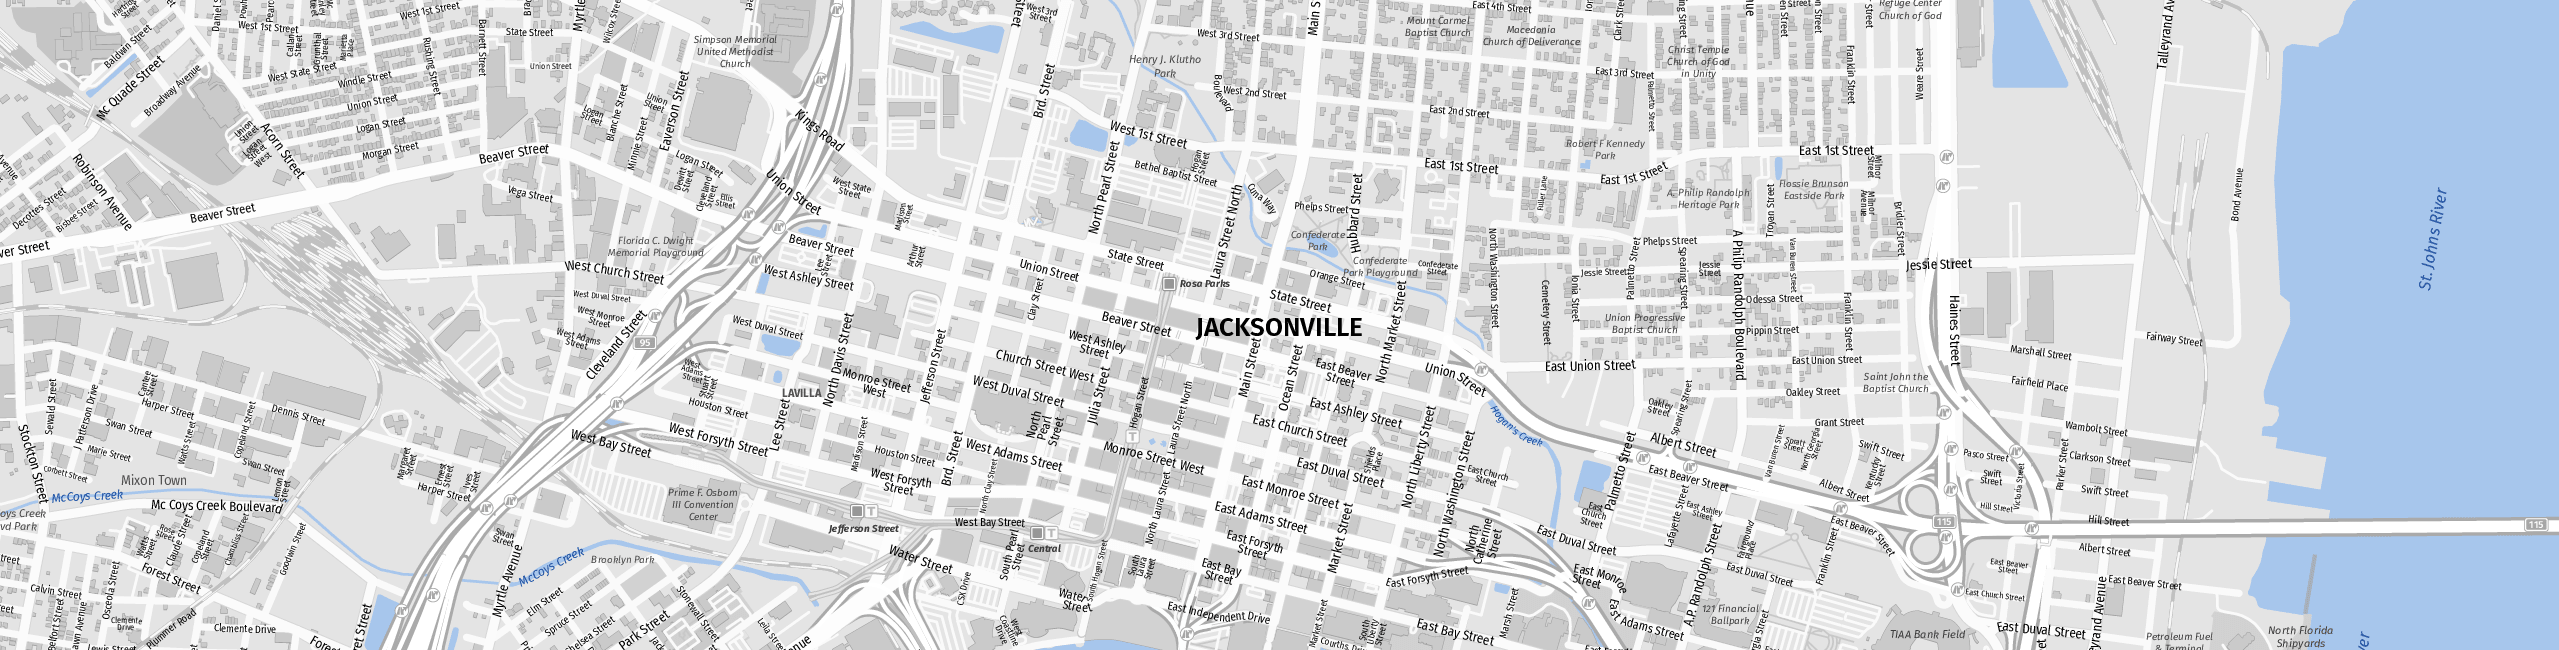 Stadtplan Jacksonville zum Downloaden.